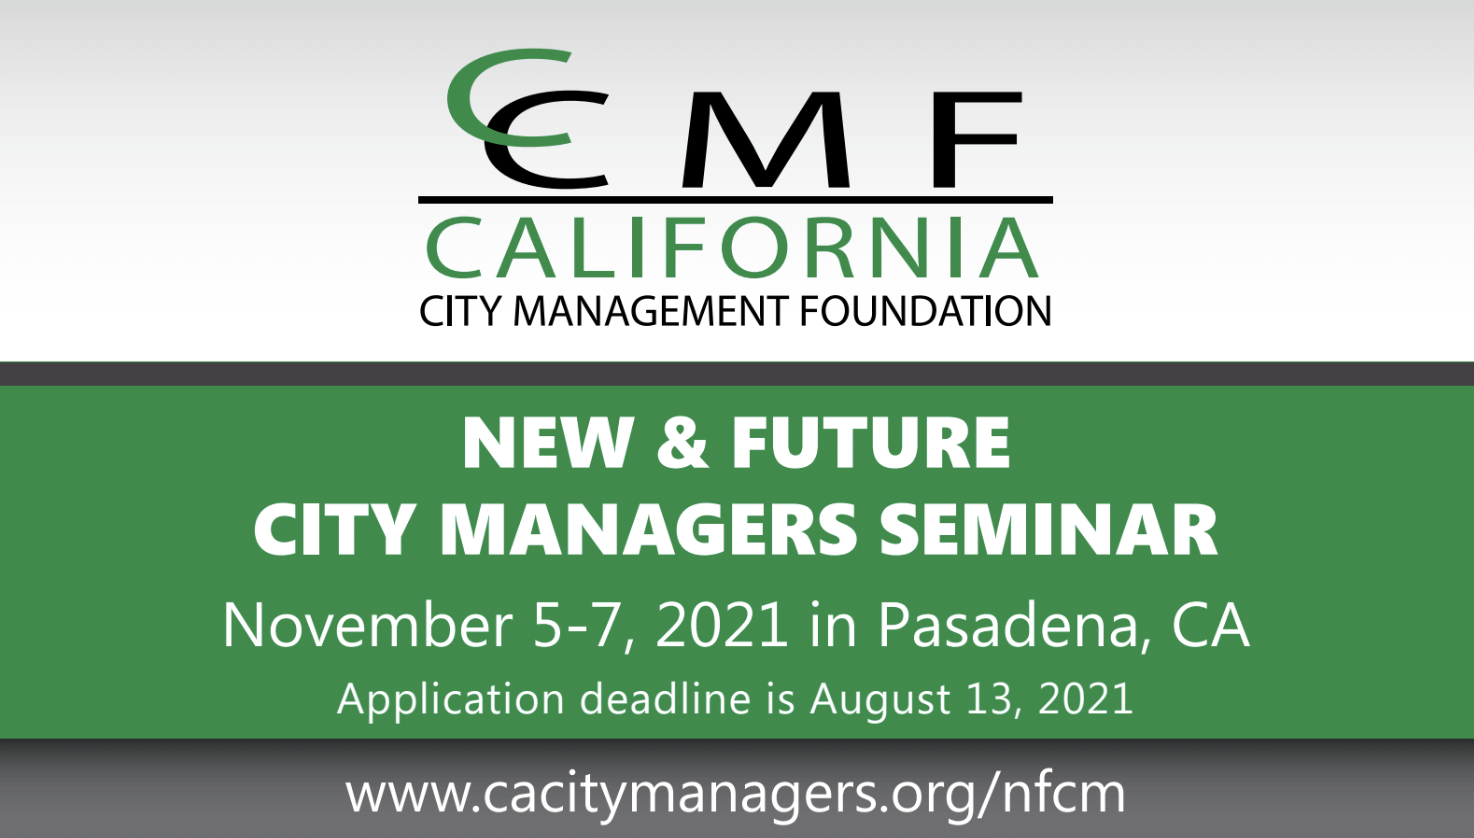 New & Future City Managers Seminar, November 5-7, 2021 in Pasadena, CA